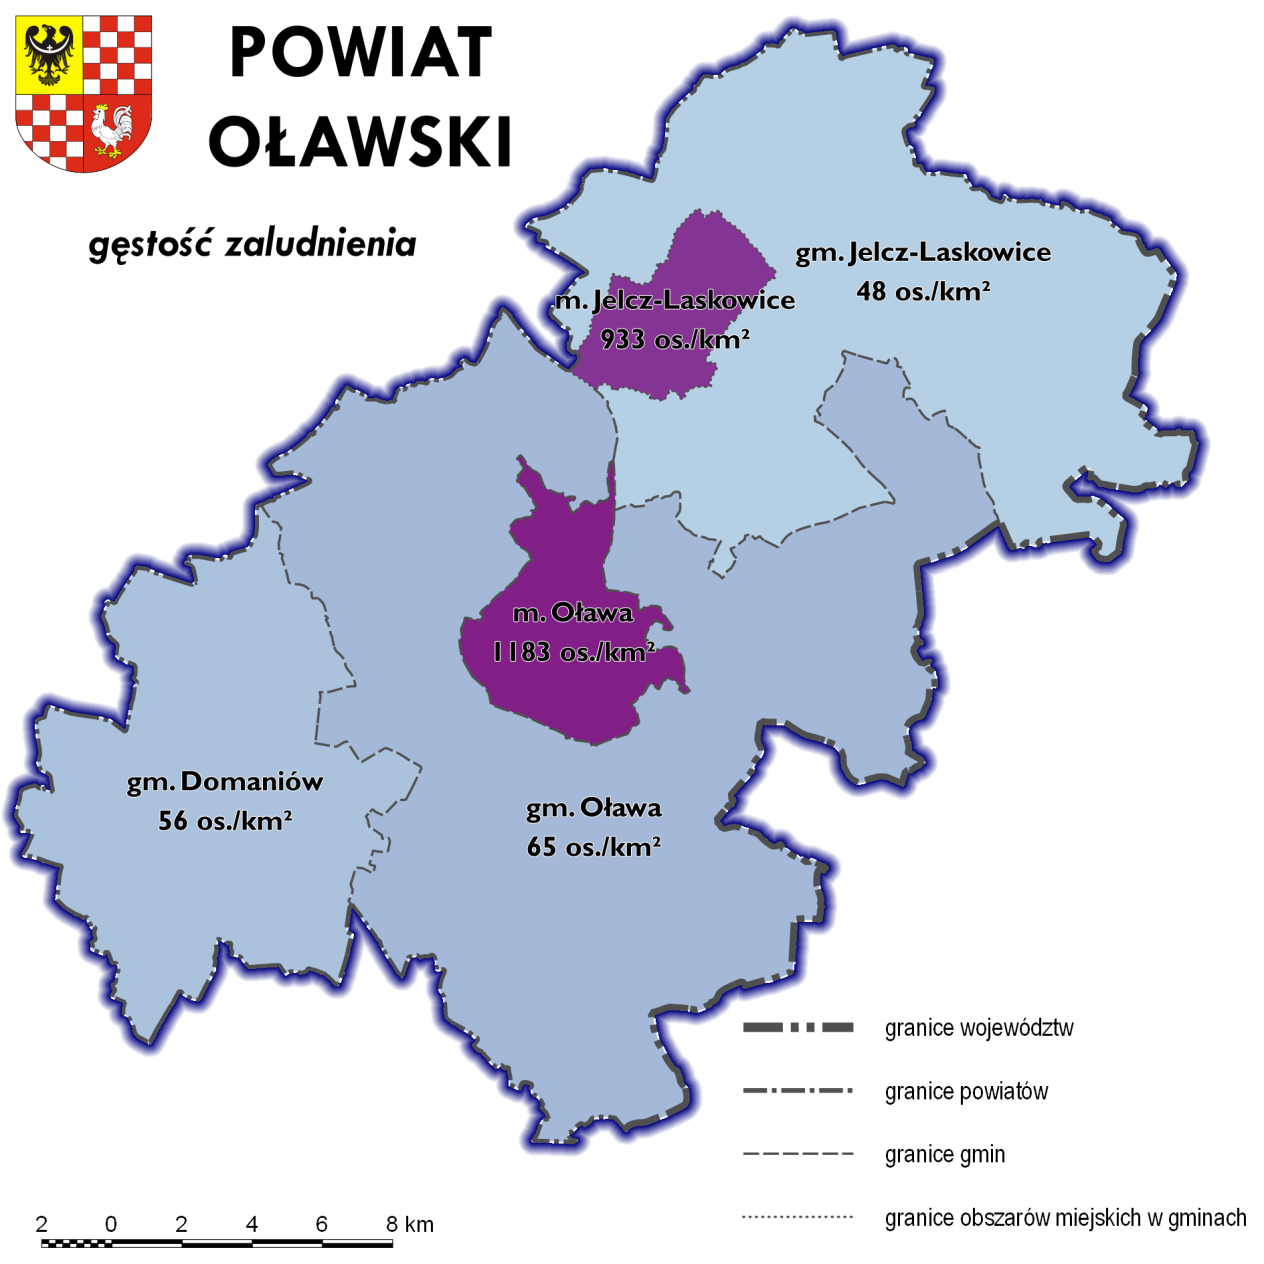 Kluczowymi czynnikami kształtującymi potrzeby przewozowe mieszkańców powiatu oławskiego są funkcje pełnione przez dwa największe ośrodki miejskie w regionie, czyli miasta Oława i Jelcz-Laskowice.